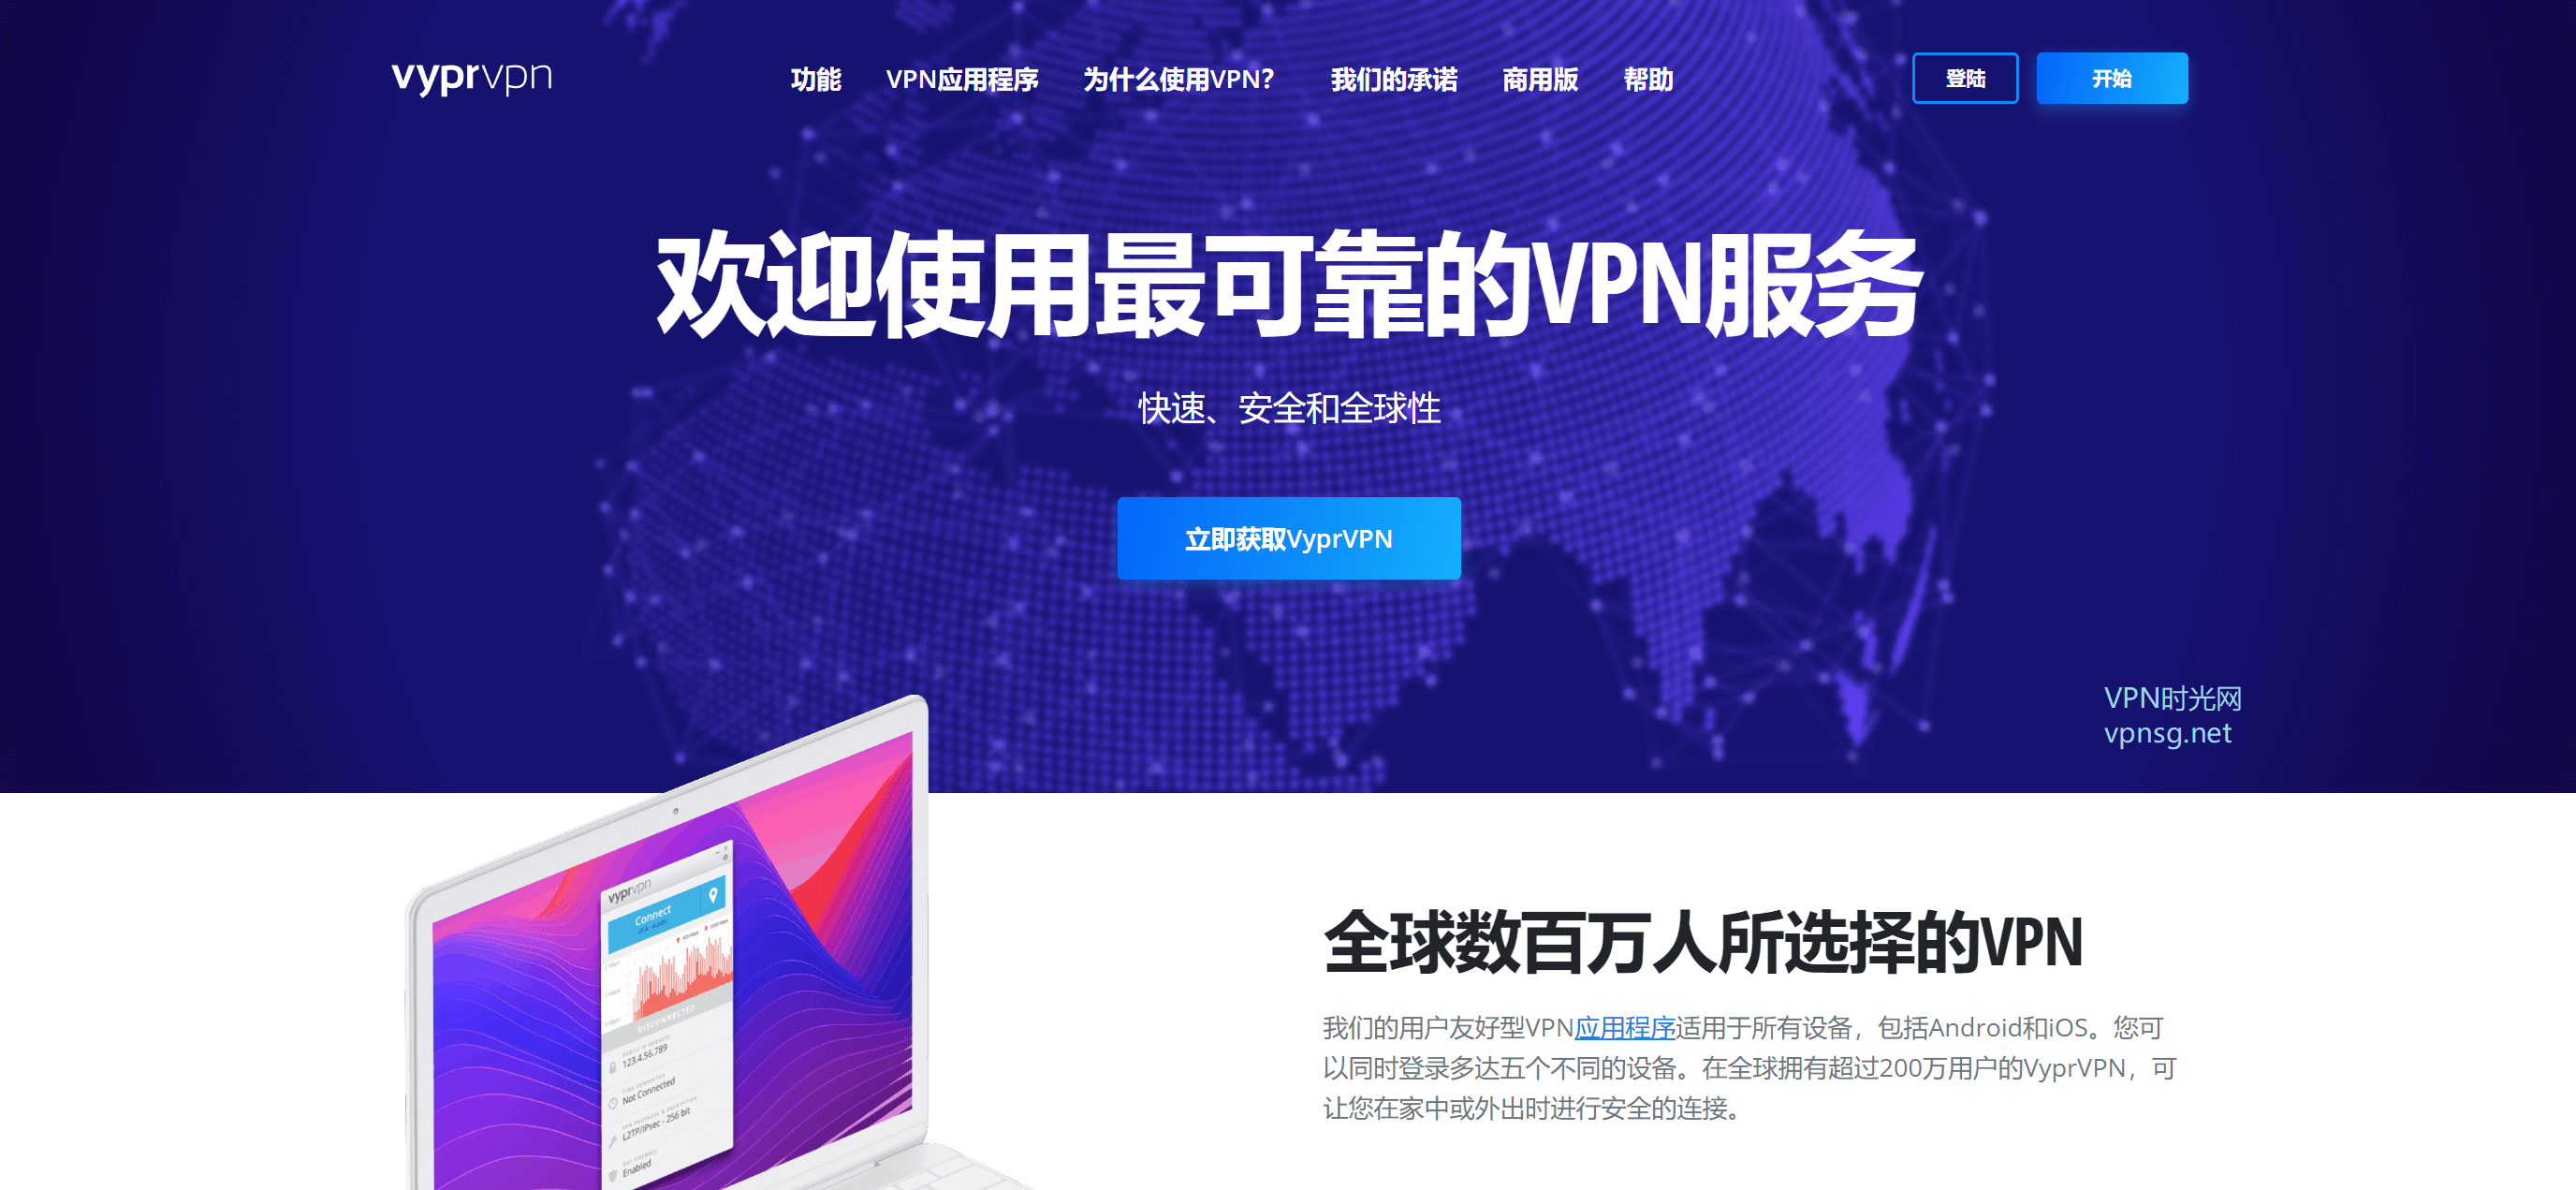 vyprvpn 2019 推荐VPN